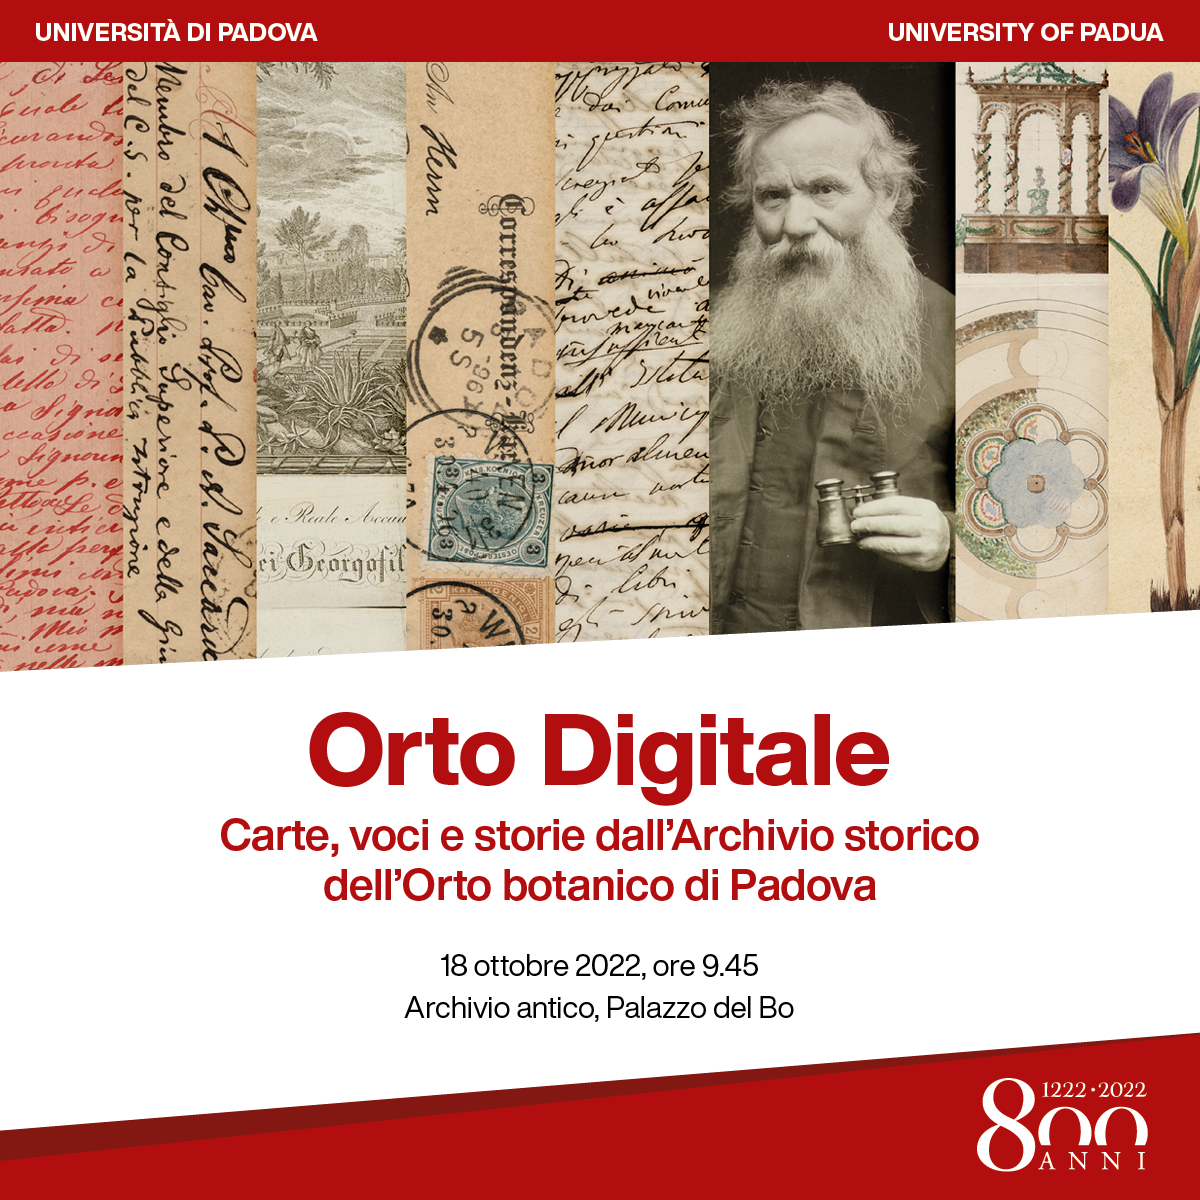 Orto digitale. Carte, voci e storie dall’Archivio storico dell’Orto botanico di Padova. Giornata di studio